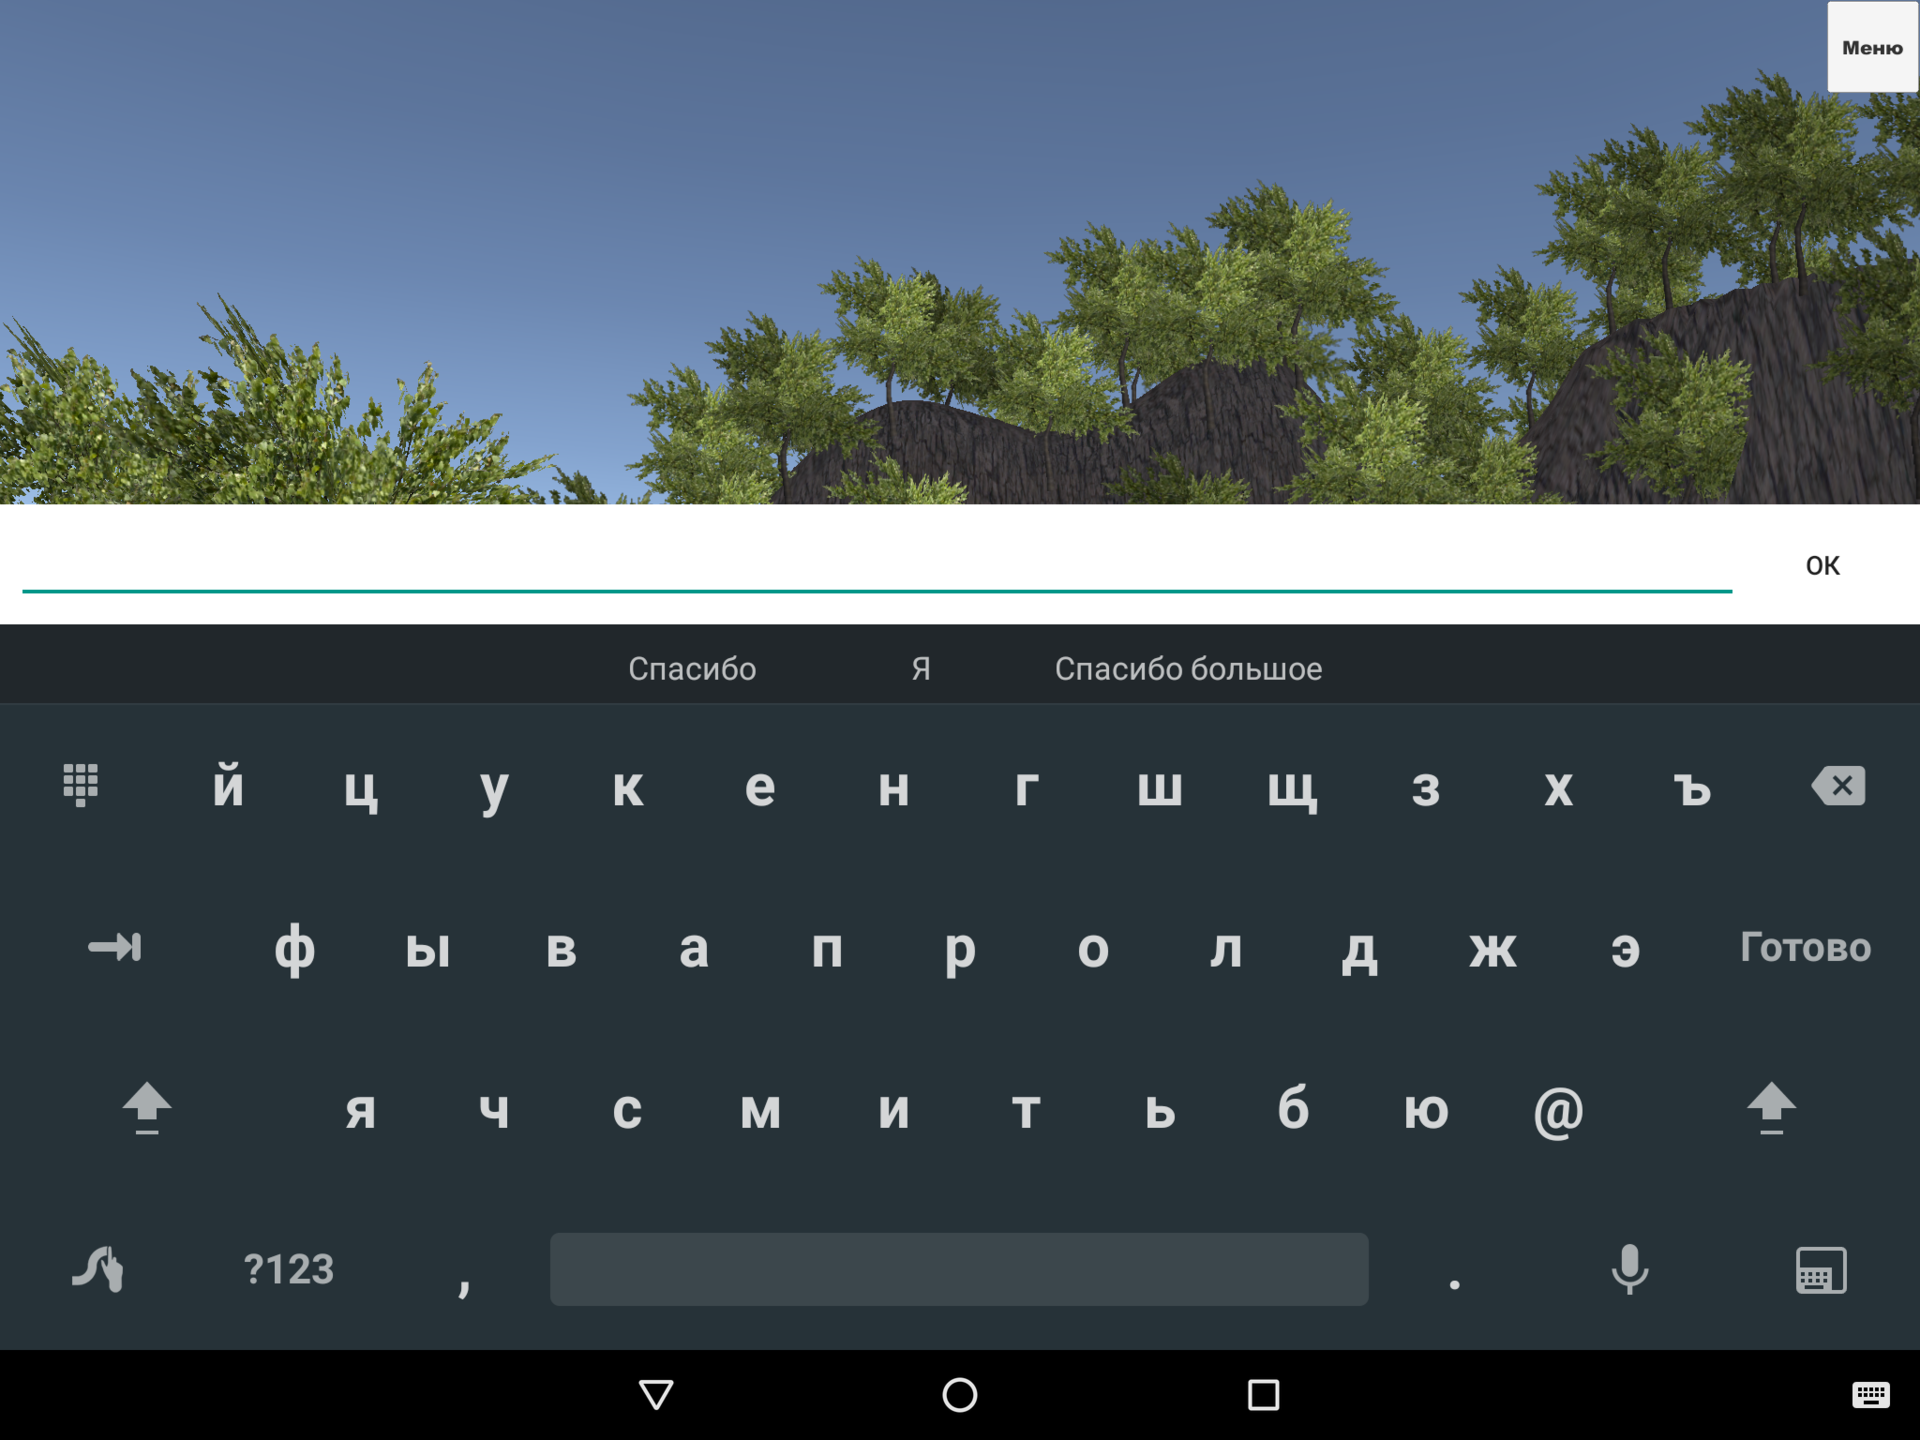 ChairInput. Пишем игру в Unity, управляемую с помощью виртуальной клавиатуры Android. Проблема с углом обзора камеры - 3